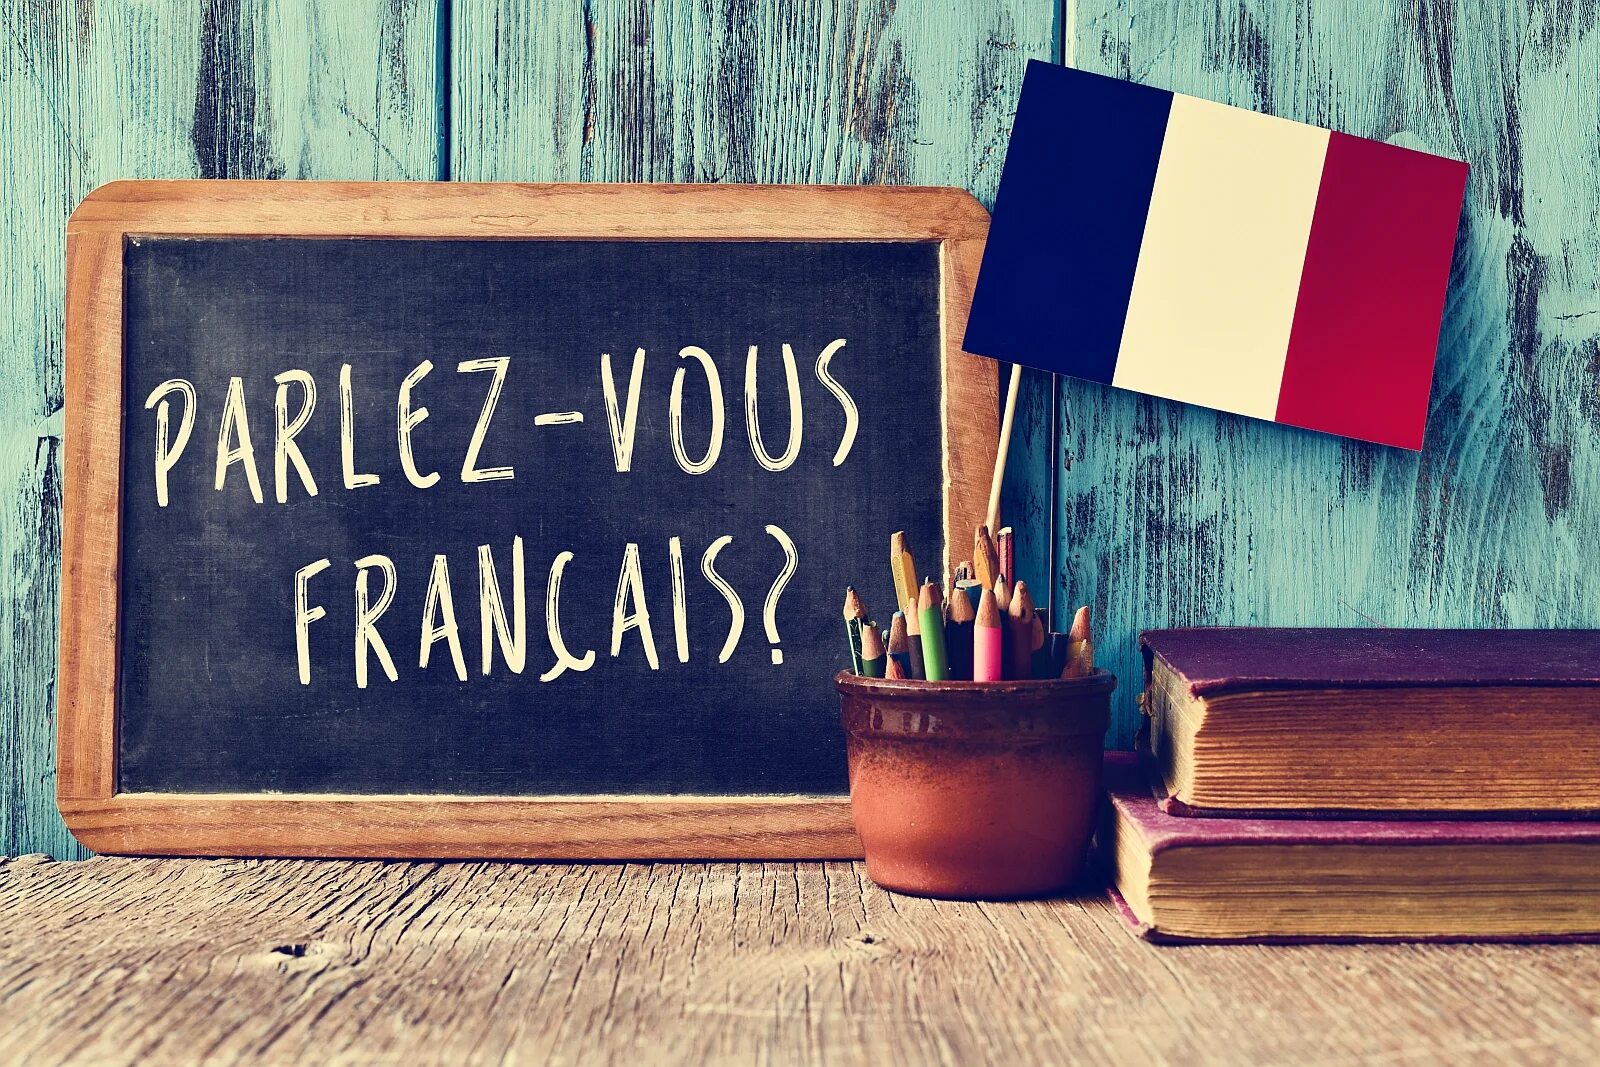 Уроки изучения французского языка. Французский язык. Урок французского языка. Изучение французского языка картинки. Французский язык в картинках.